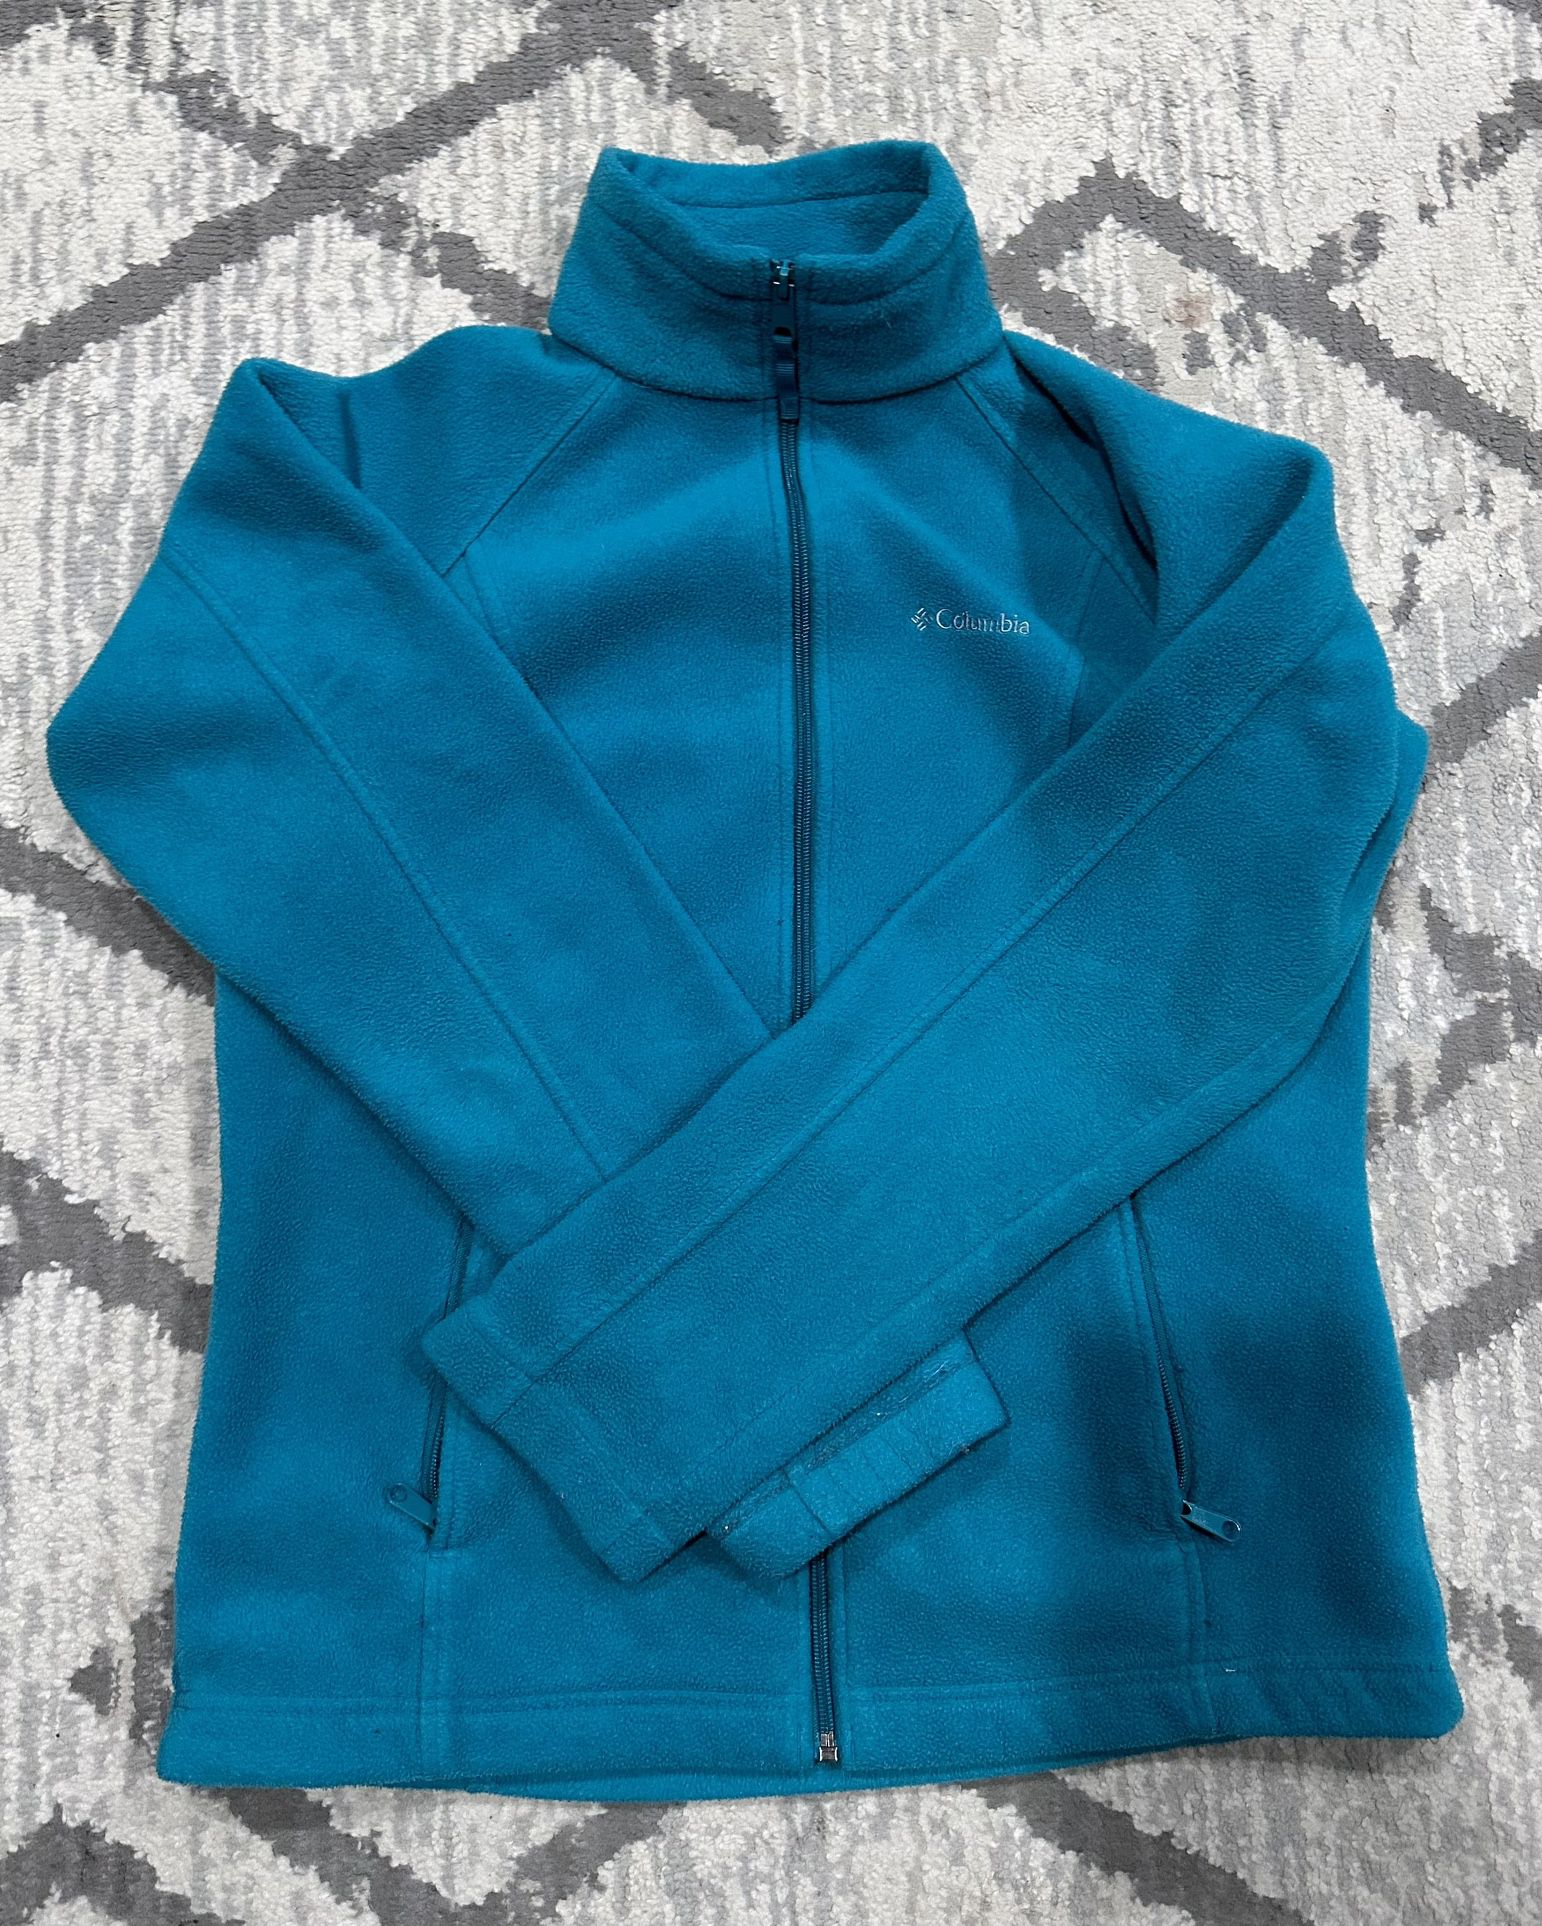 Columbia women’s fleece jacket size M